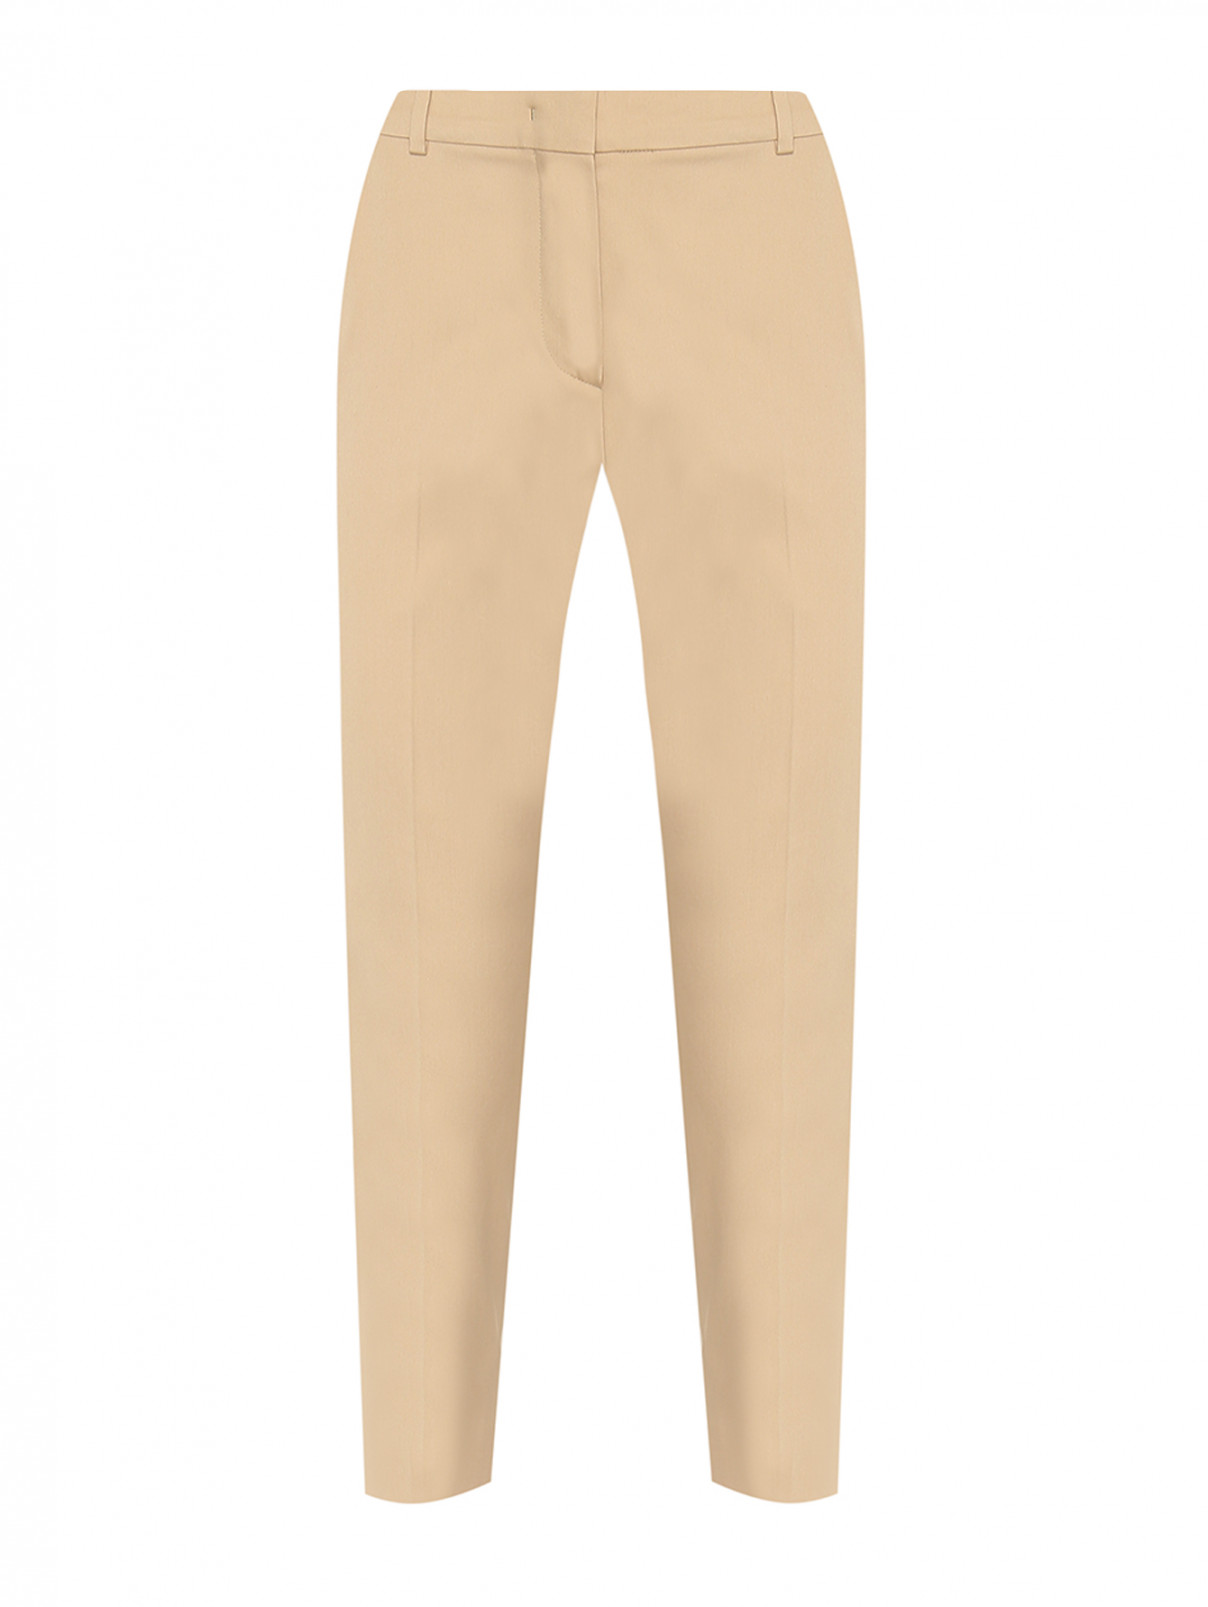 Укороченные брюки из хлопка Max Mara  –  Общий вид  – Цвет:  Бежевый